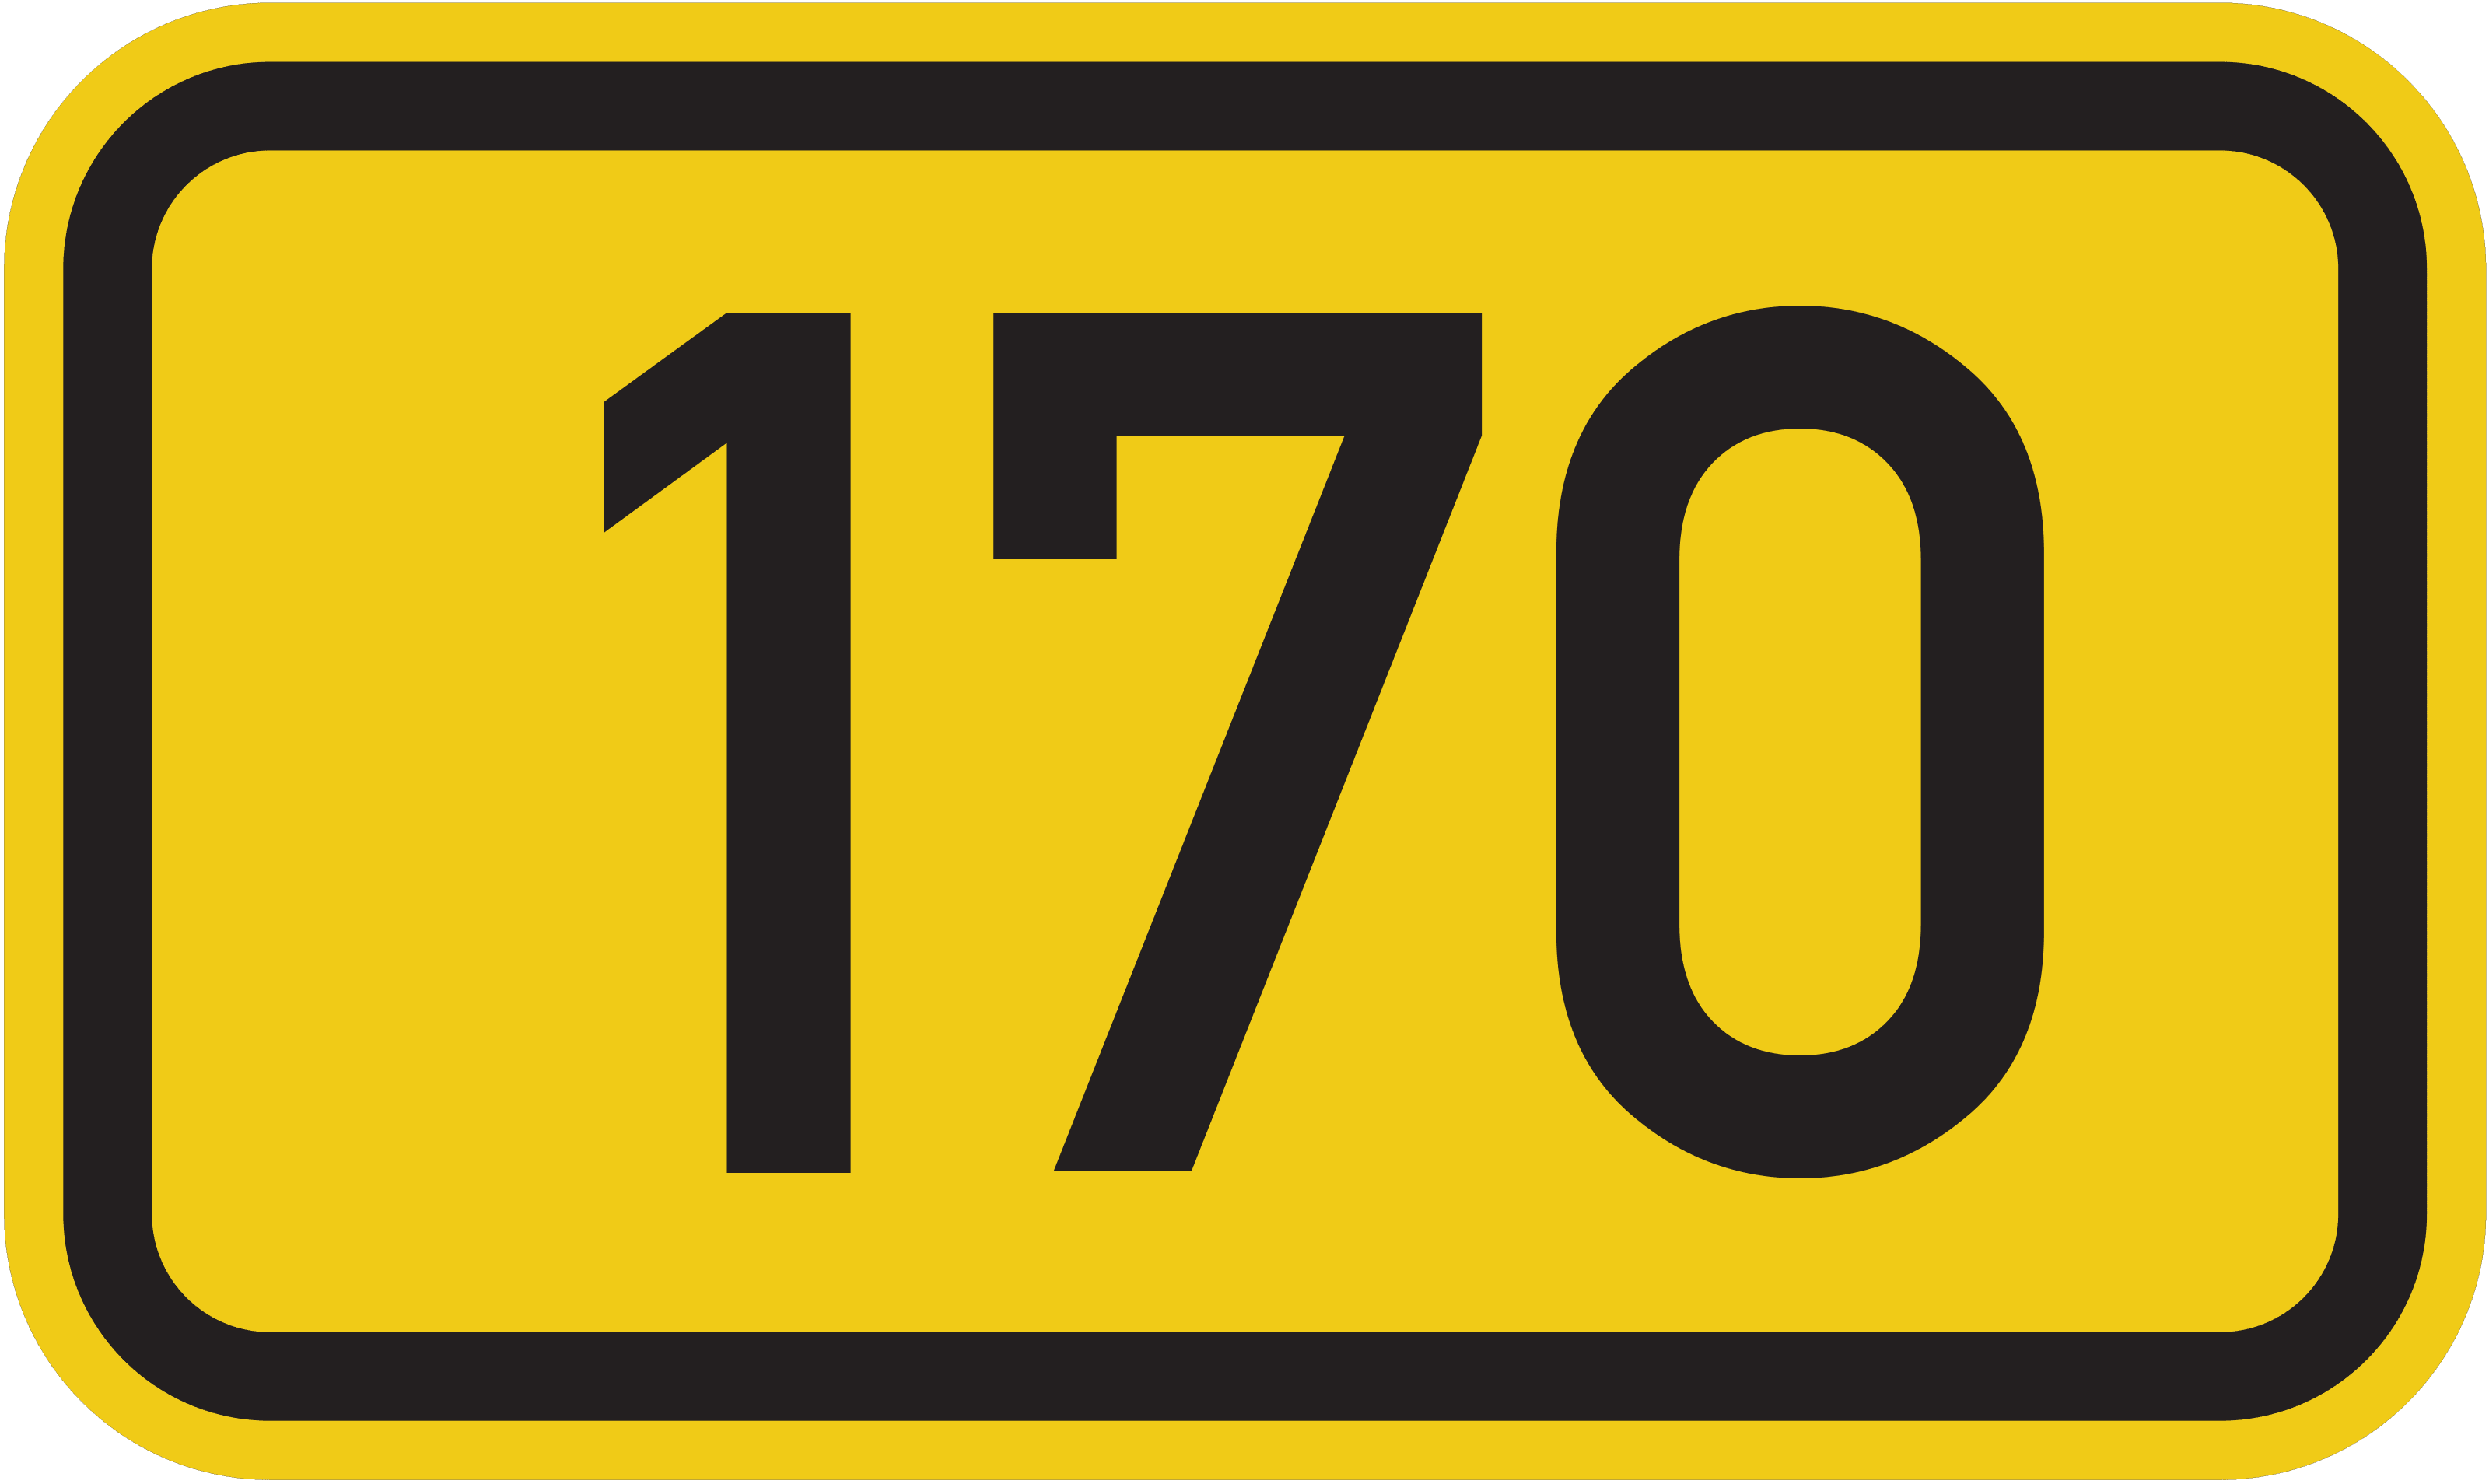 Bundesstraße B 170